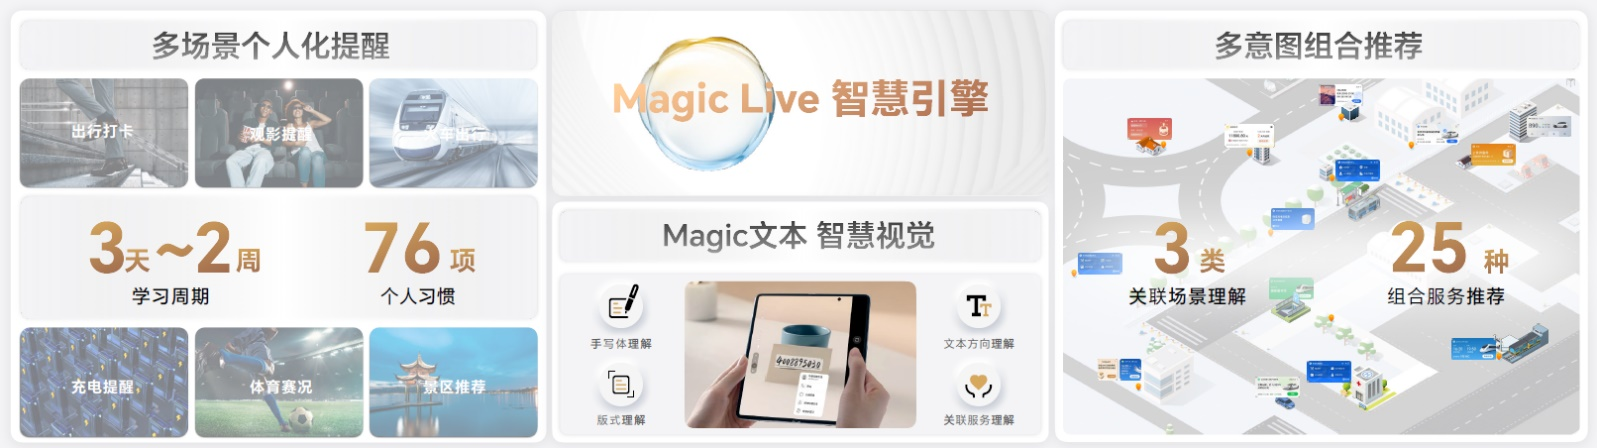 荣耀MagicOS7.0正式发布！四大根技术构建个人化操作系统